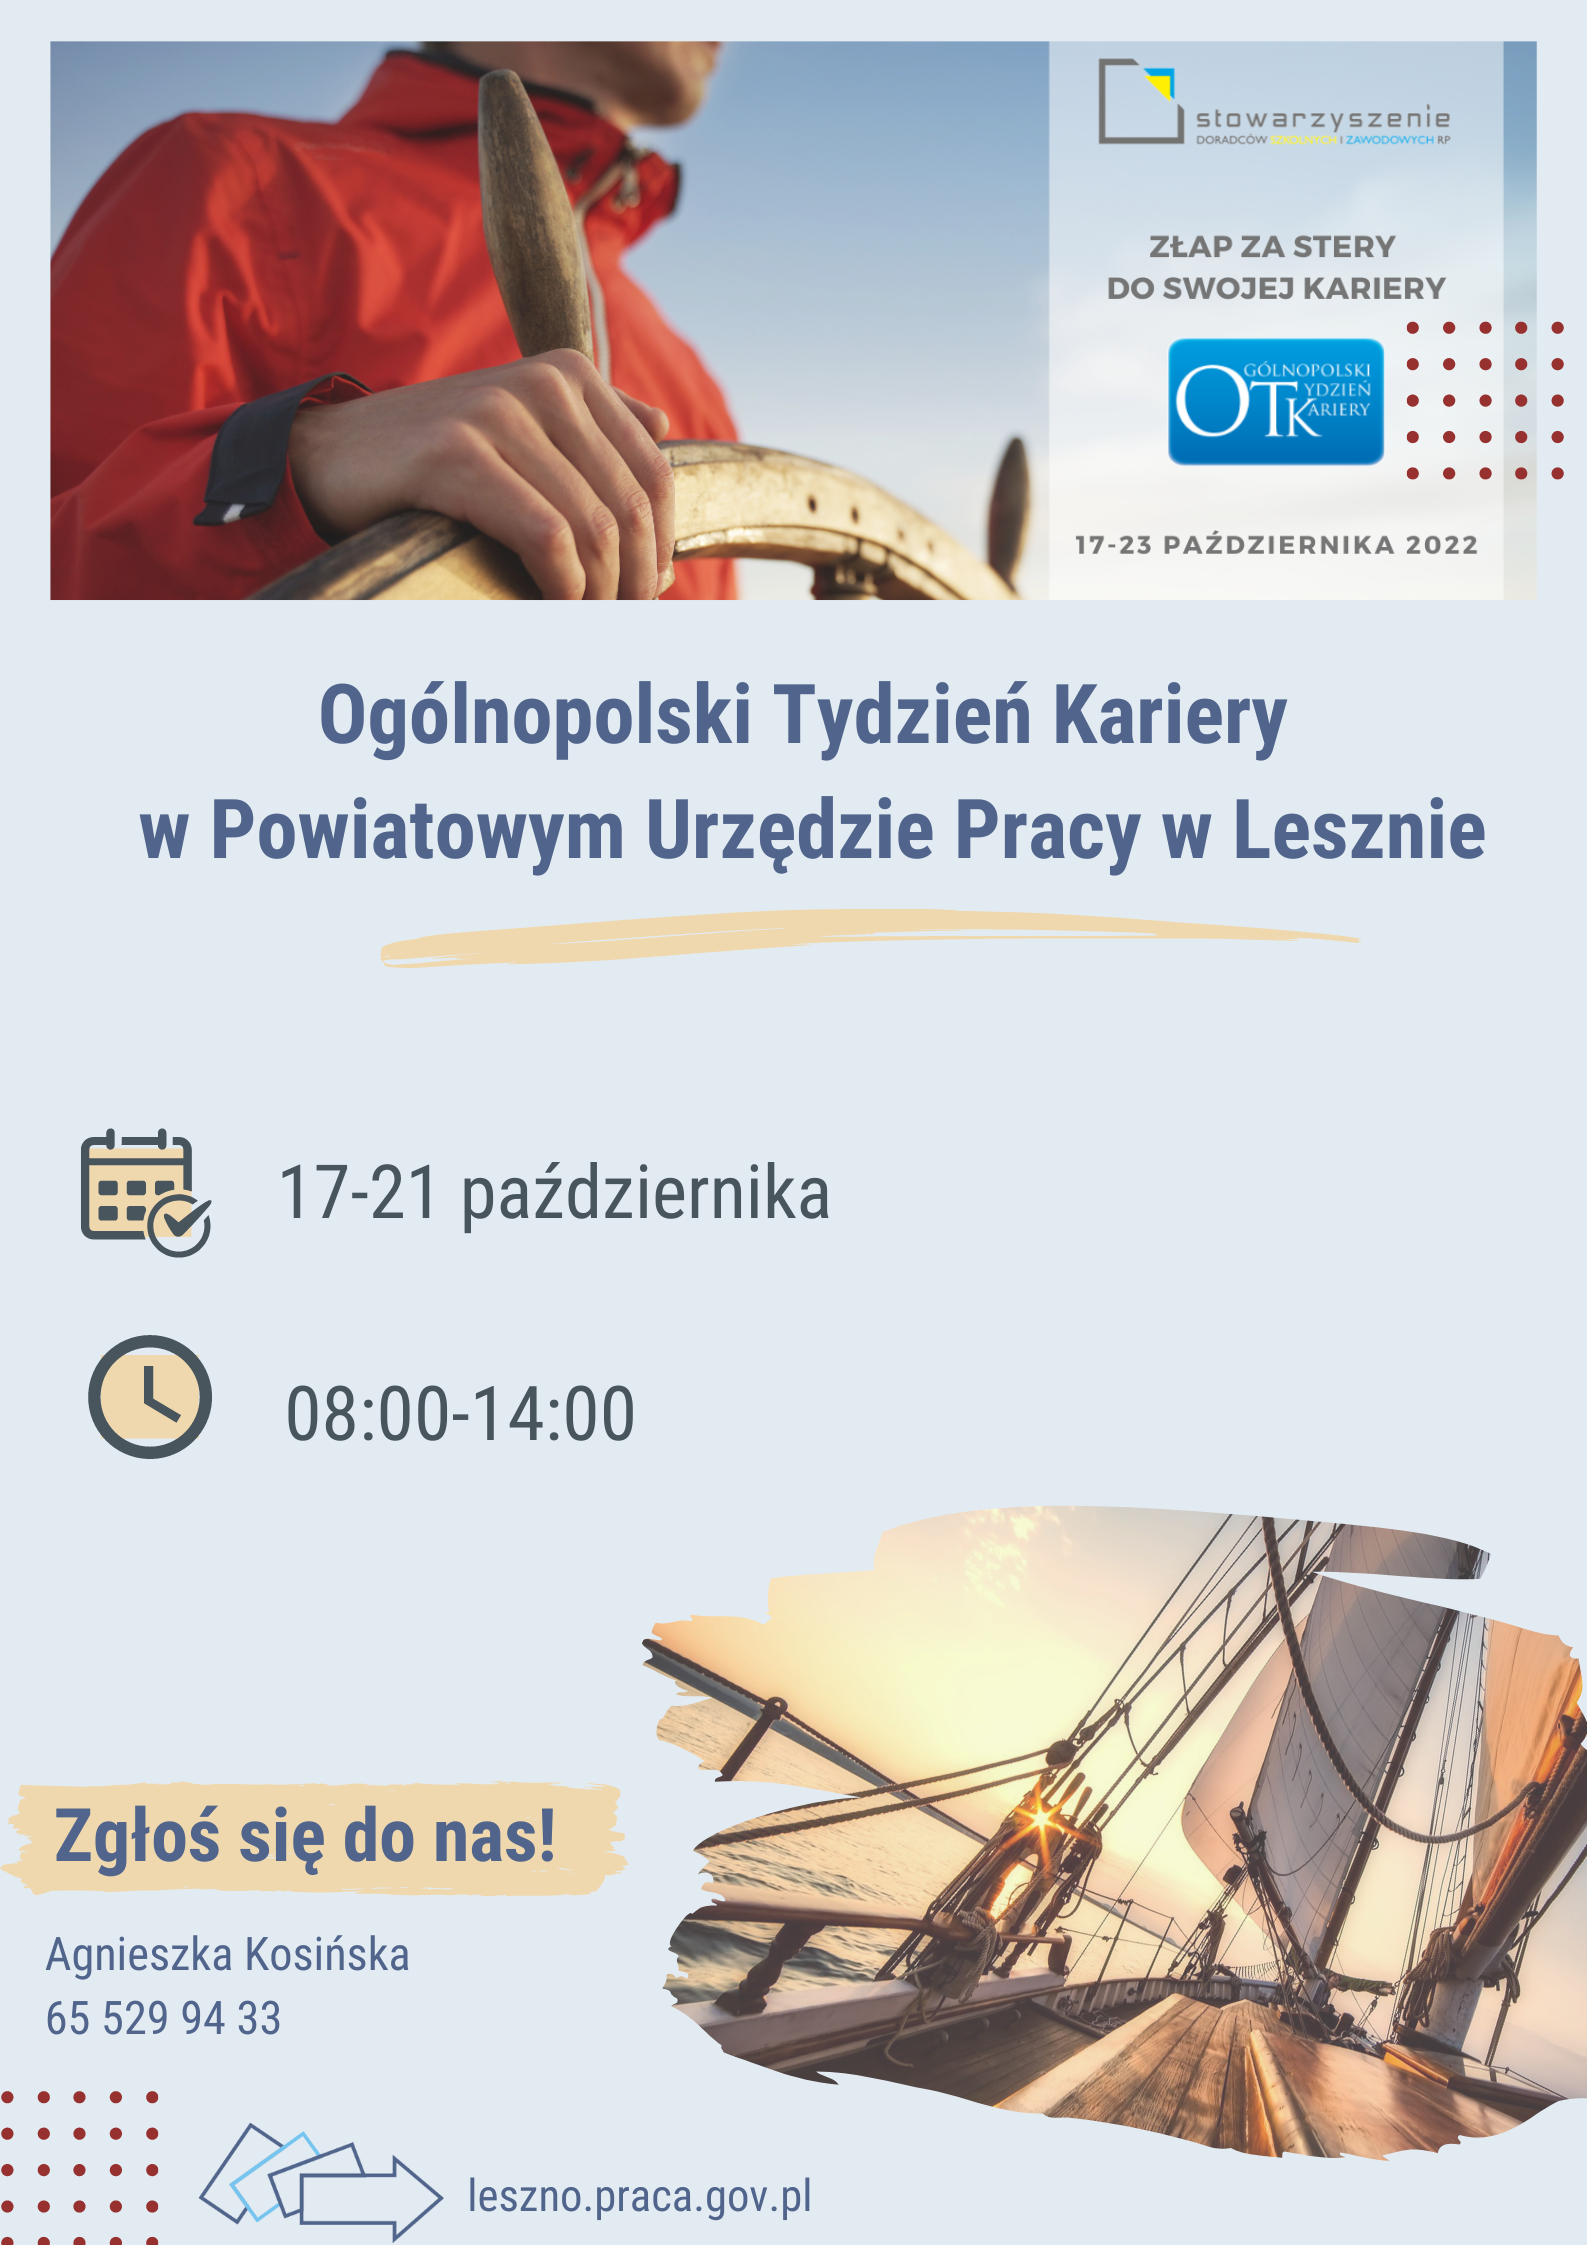 Grafika przedstawiająca sternika na okręcie z opisem: " Ogólnopolski Tydzień Kariery w PUP w Lesznie - złap za stery swojej kariery" od 17 do 21 października godz. 8:00-14:00.